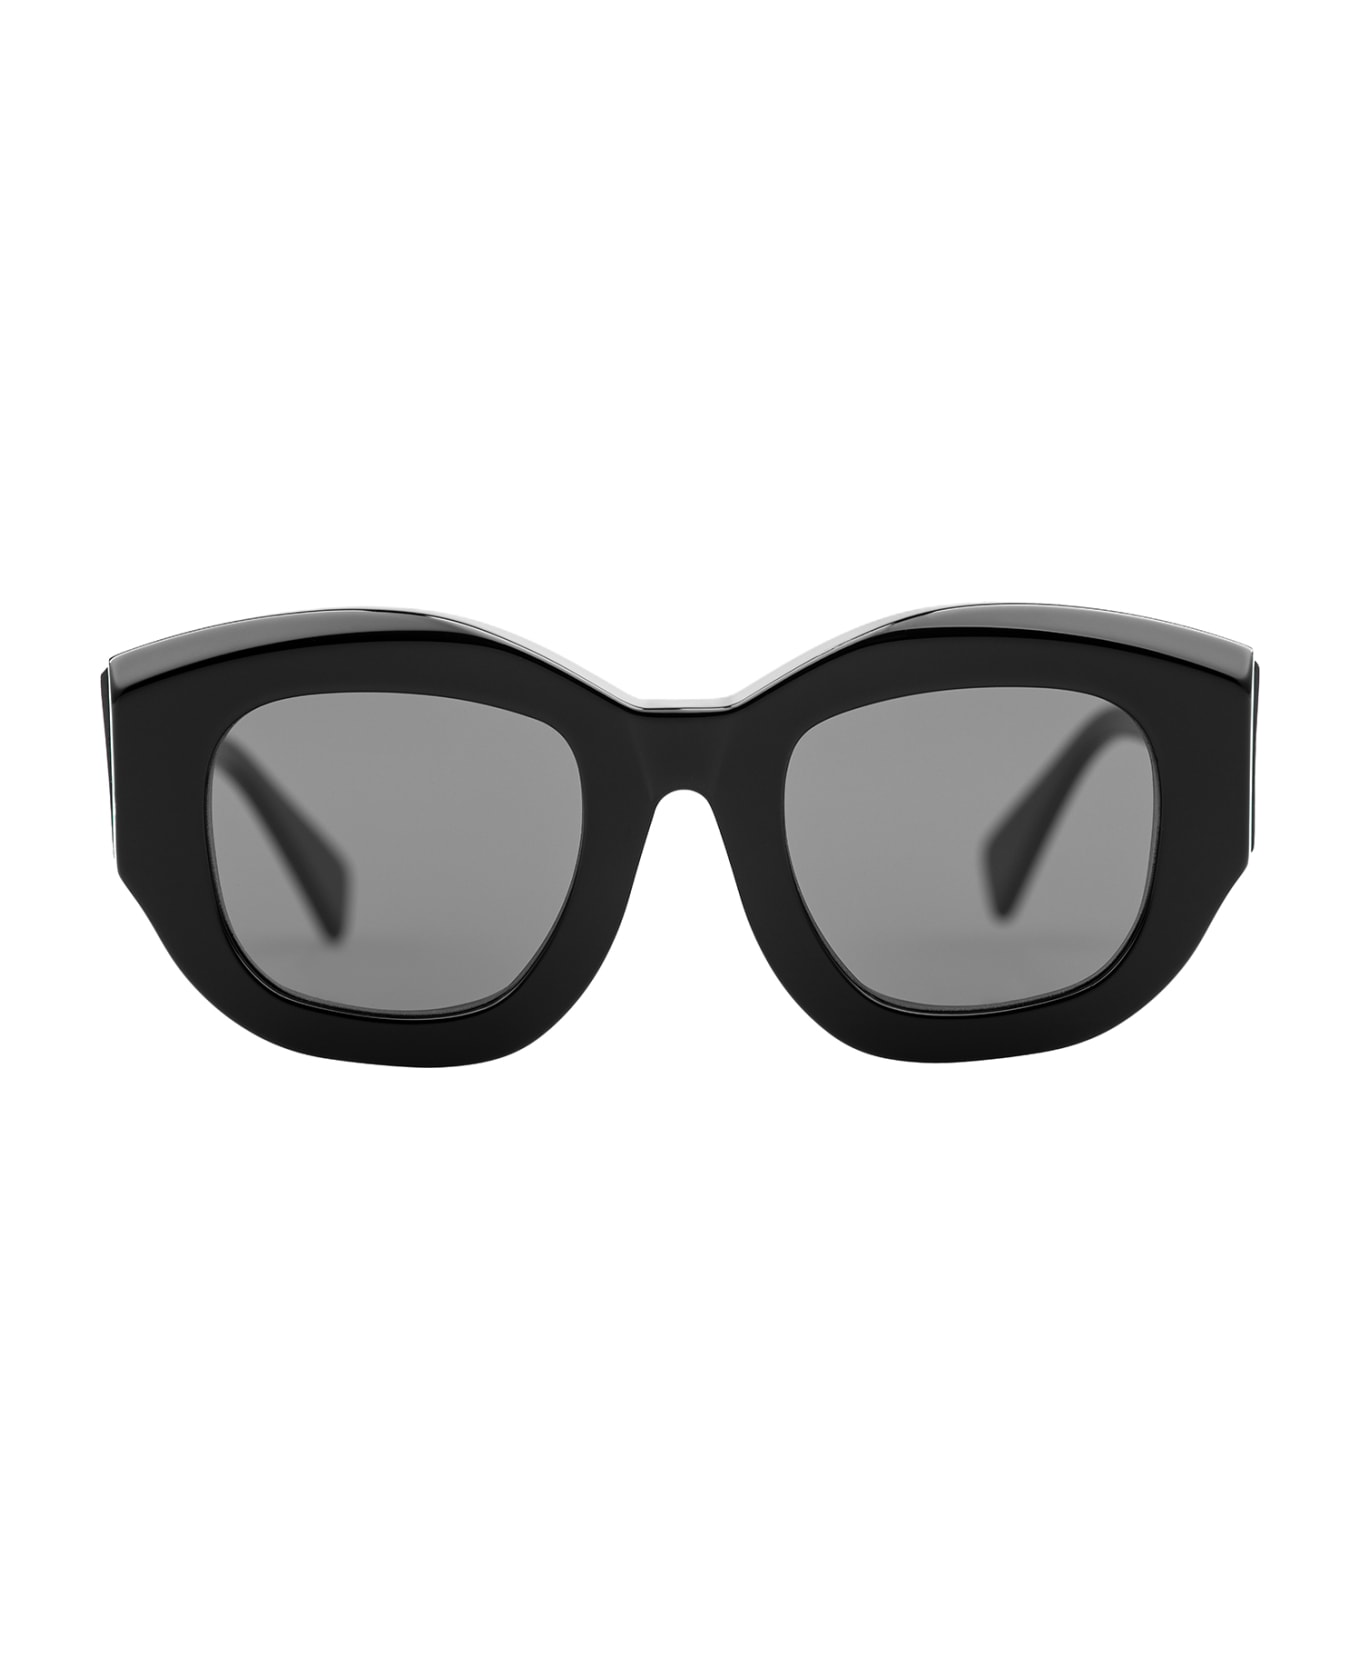 Kuboraum B5 Sunglasses - Gray